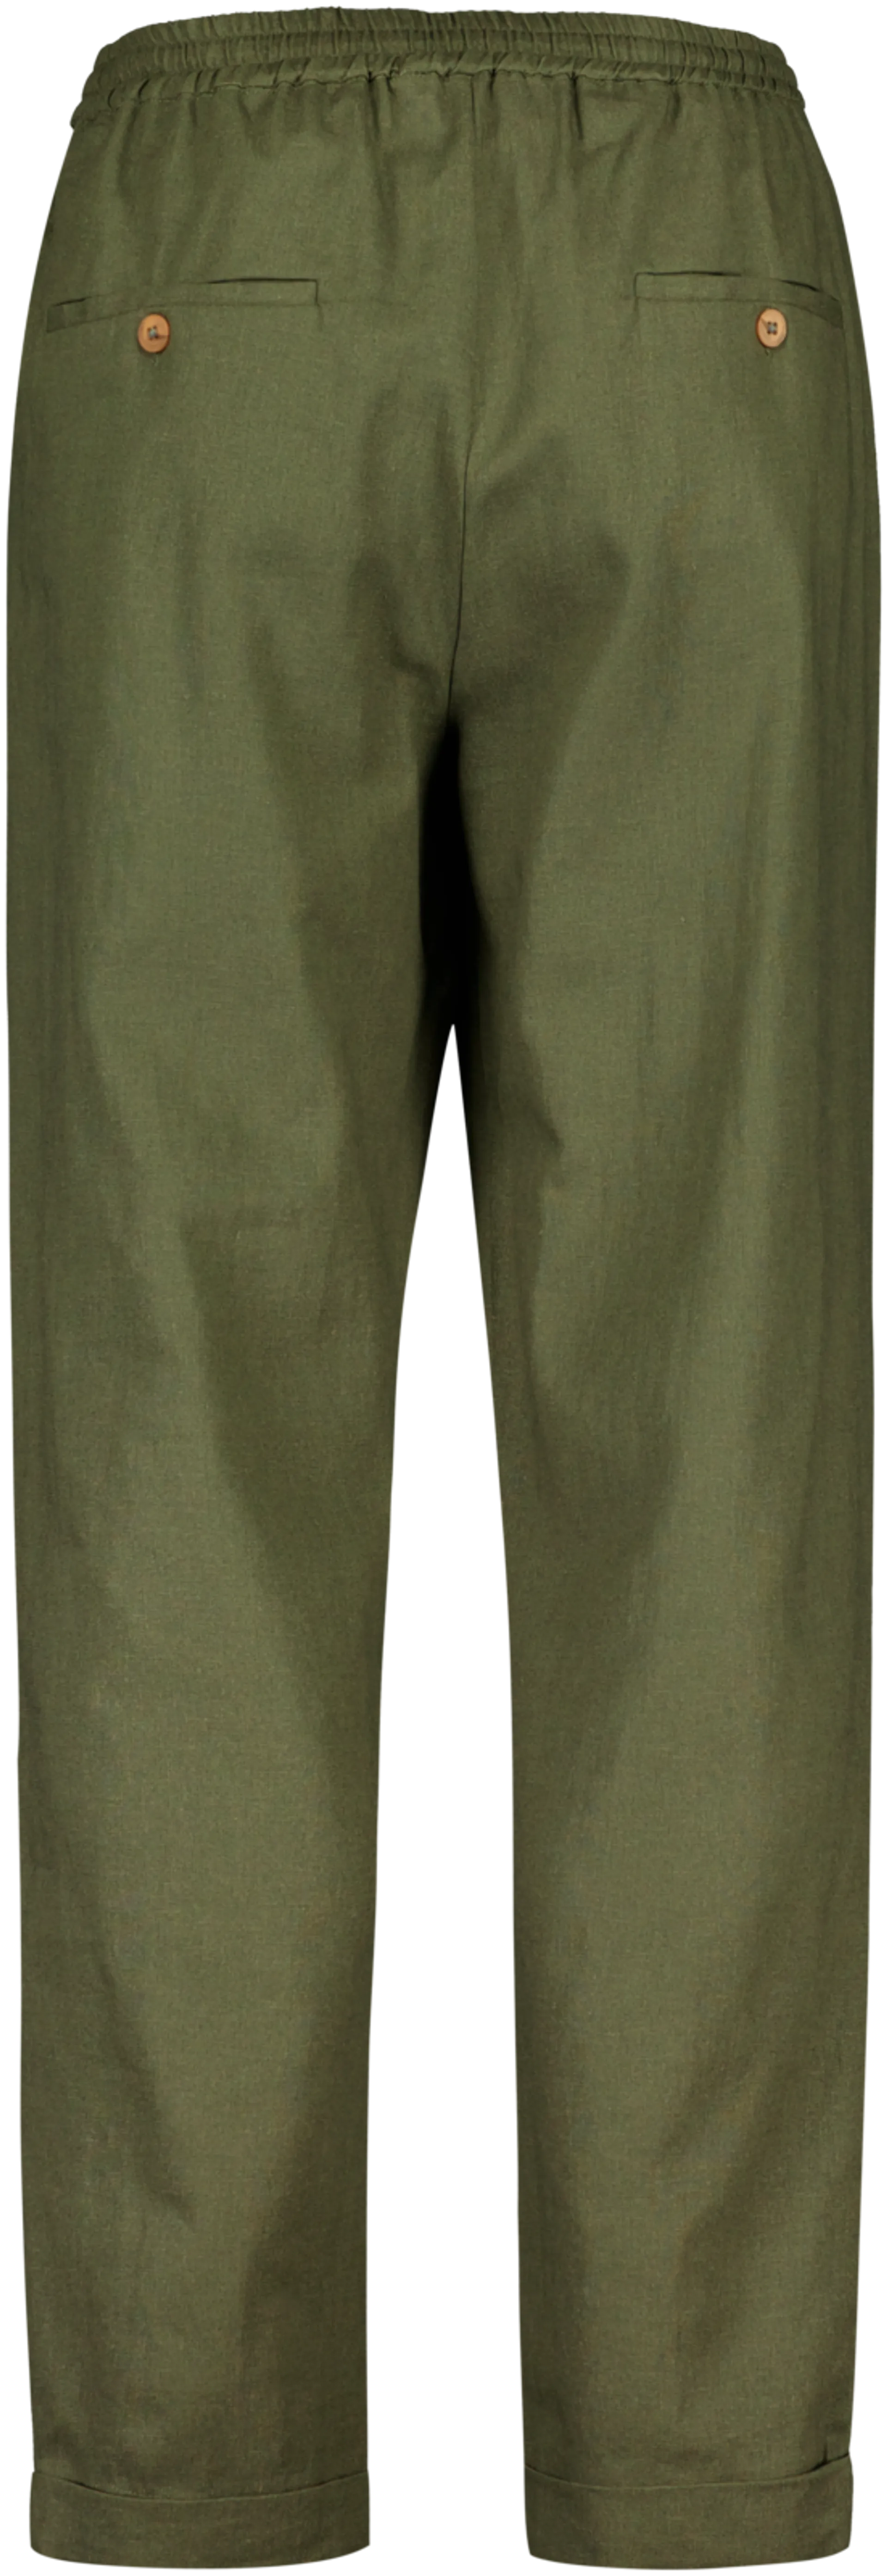 London Fog miesten housut pellavasekoitetta 202LF15245 - Olive green - 2